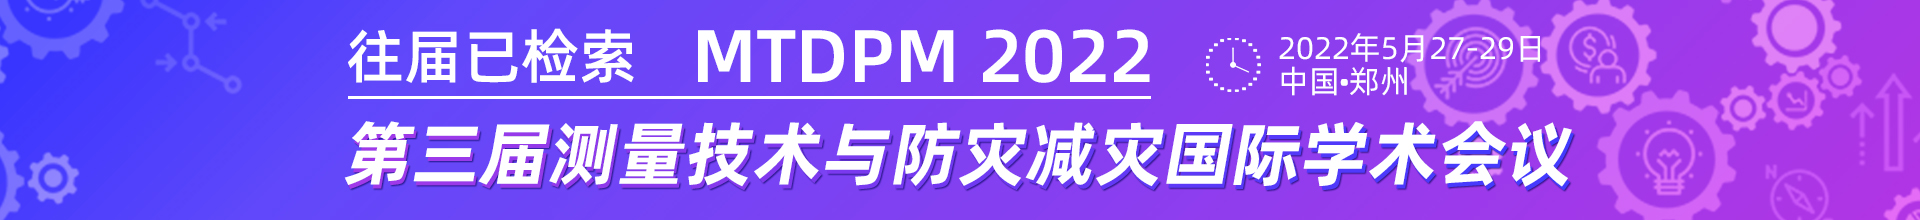 5月郑州-MTDPM2022-学术会议云PC端1920x220-陈军-20211122.jpg